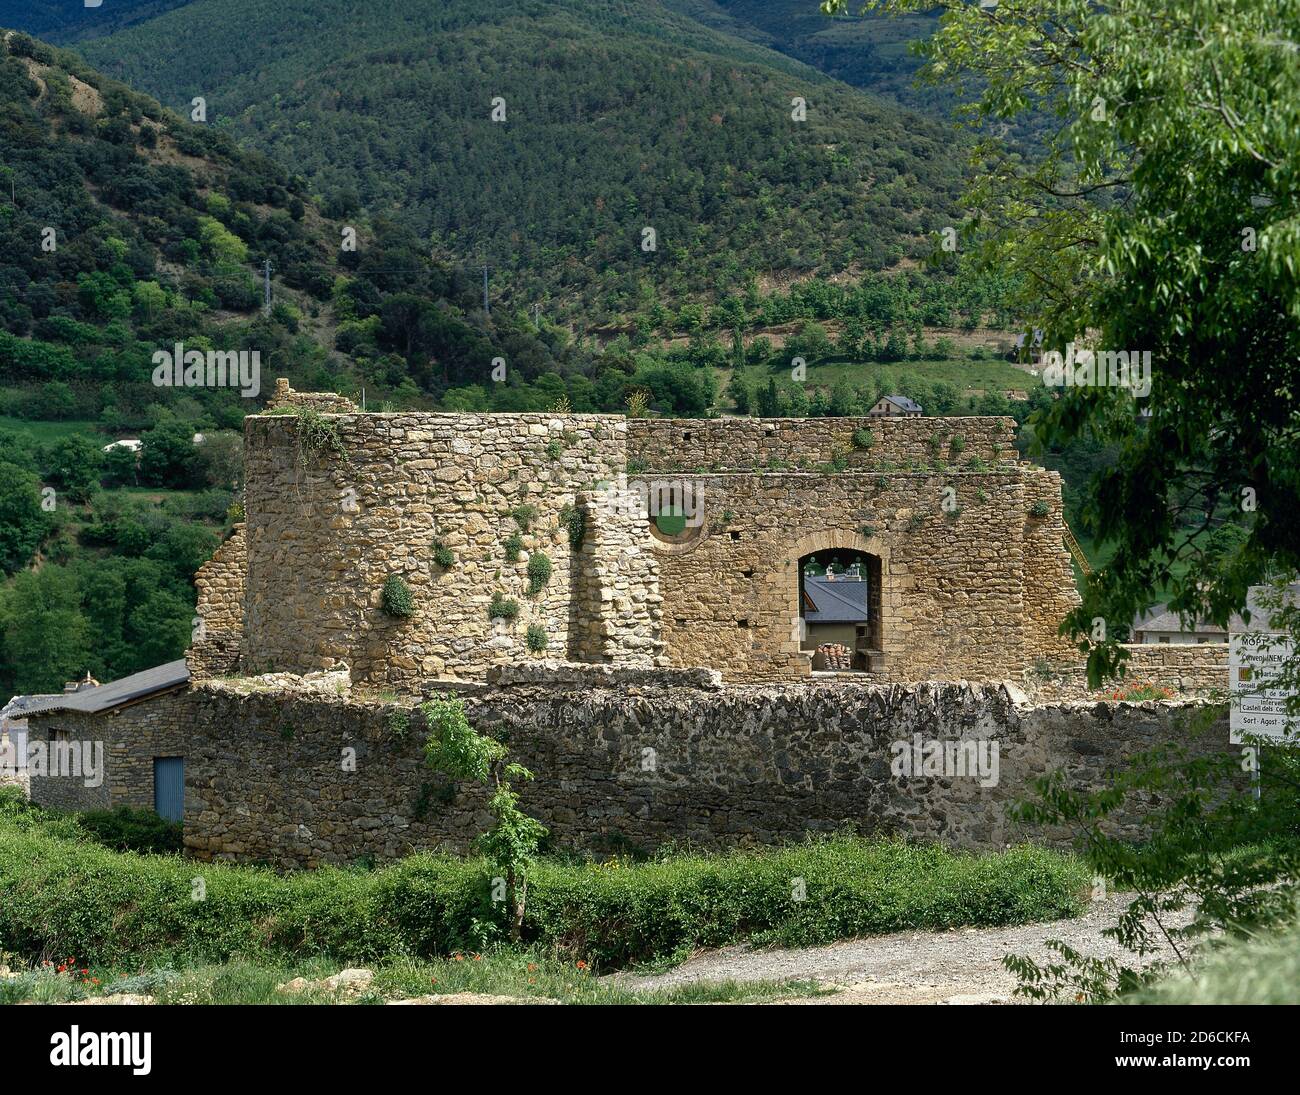 Spanien, Katalonien, Pallars Sobira Region, Provinz Lleida, Sort. Castell der Grafen von Pallars. Die Festung ist erst 1281 dokumentiert, aber die Stadt ist seit dem 10. Jahrhundert mit den Grafen von Pallars verbunden. Blick auf die Ruinen. Stockfoto